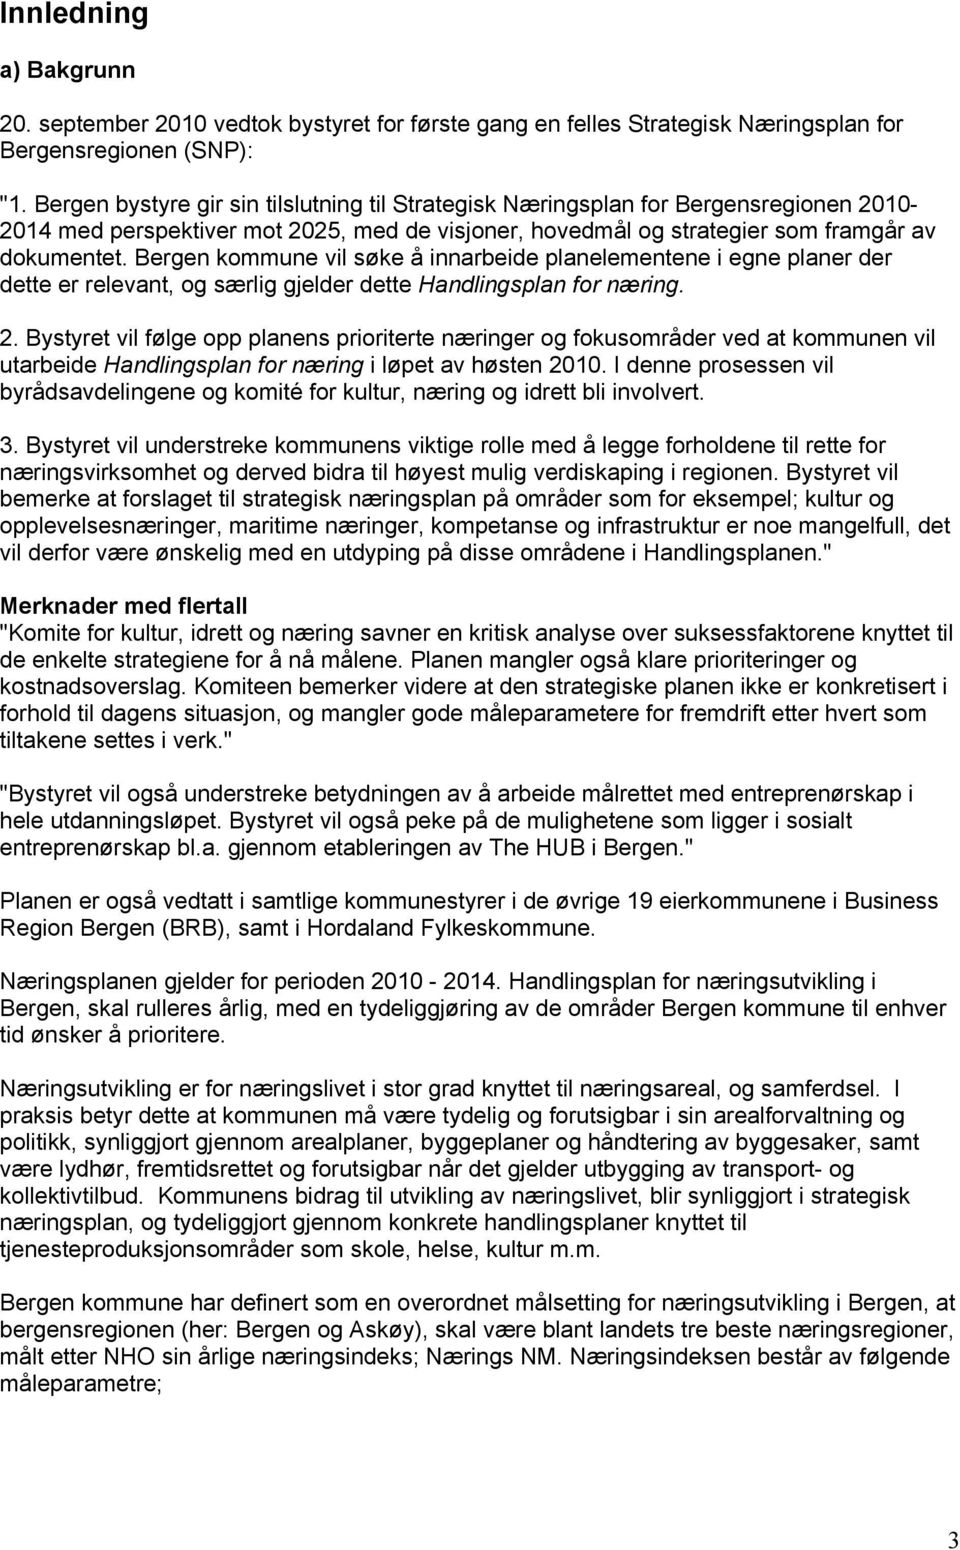 Bergen kommune vil søke å innarbeide planelementene i egne planer der dette er relevant, og særlig gjelder dette Handlingsplan for næring. 2.